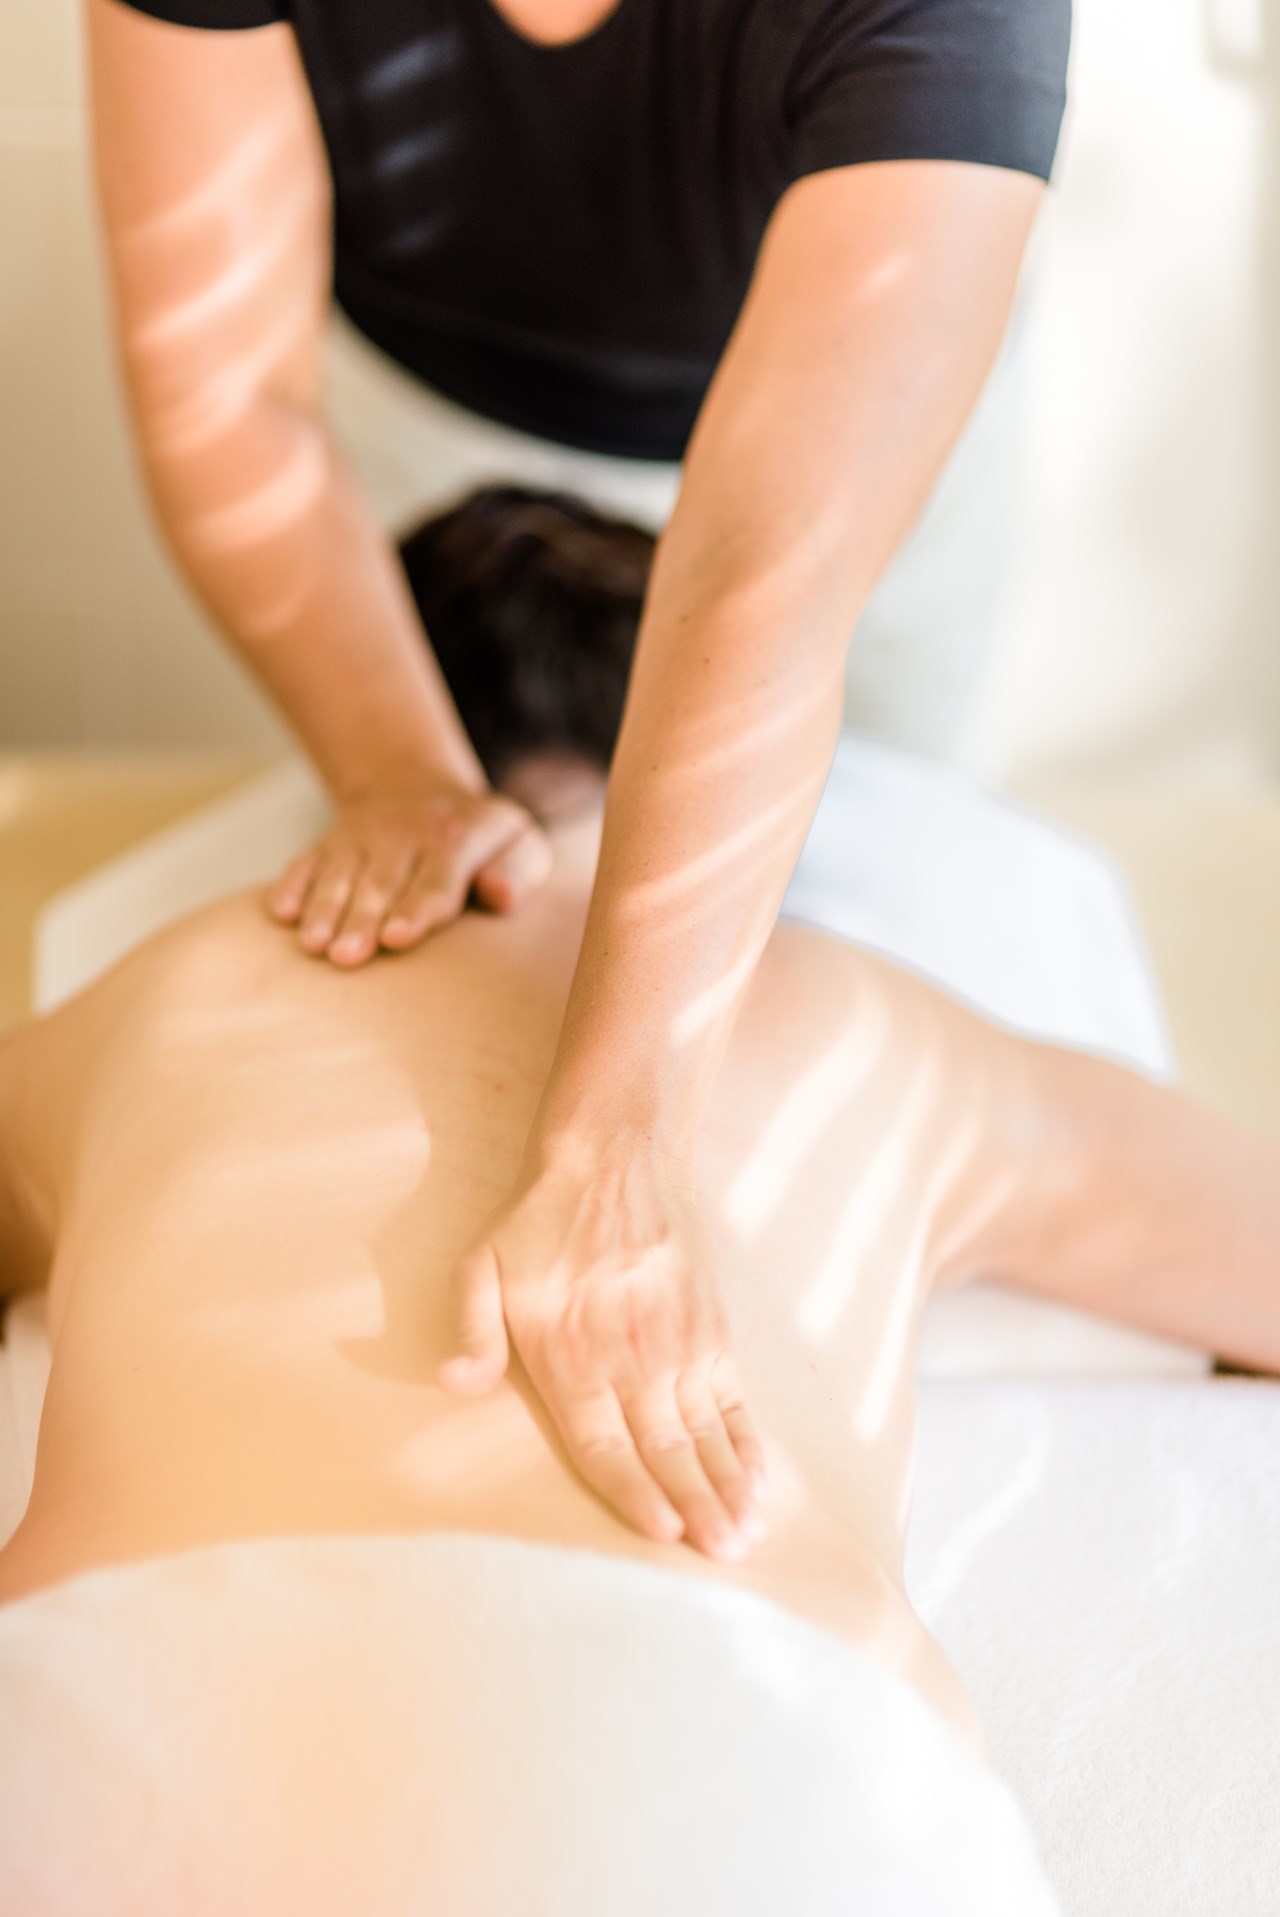 TRIHOTEL Rostock Massagen im Detail Ganzkörpermassage 